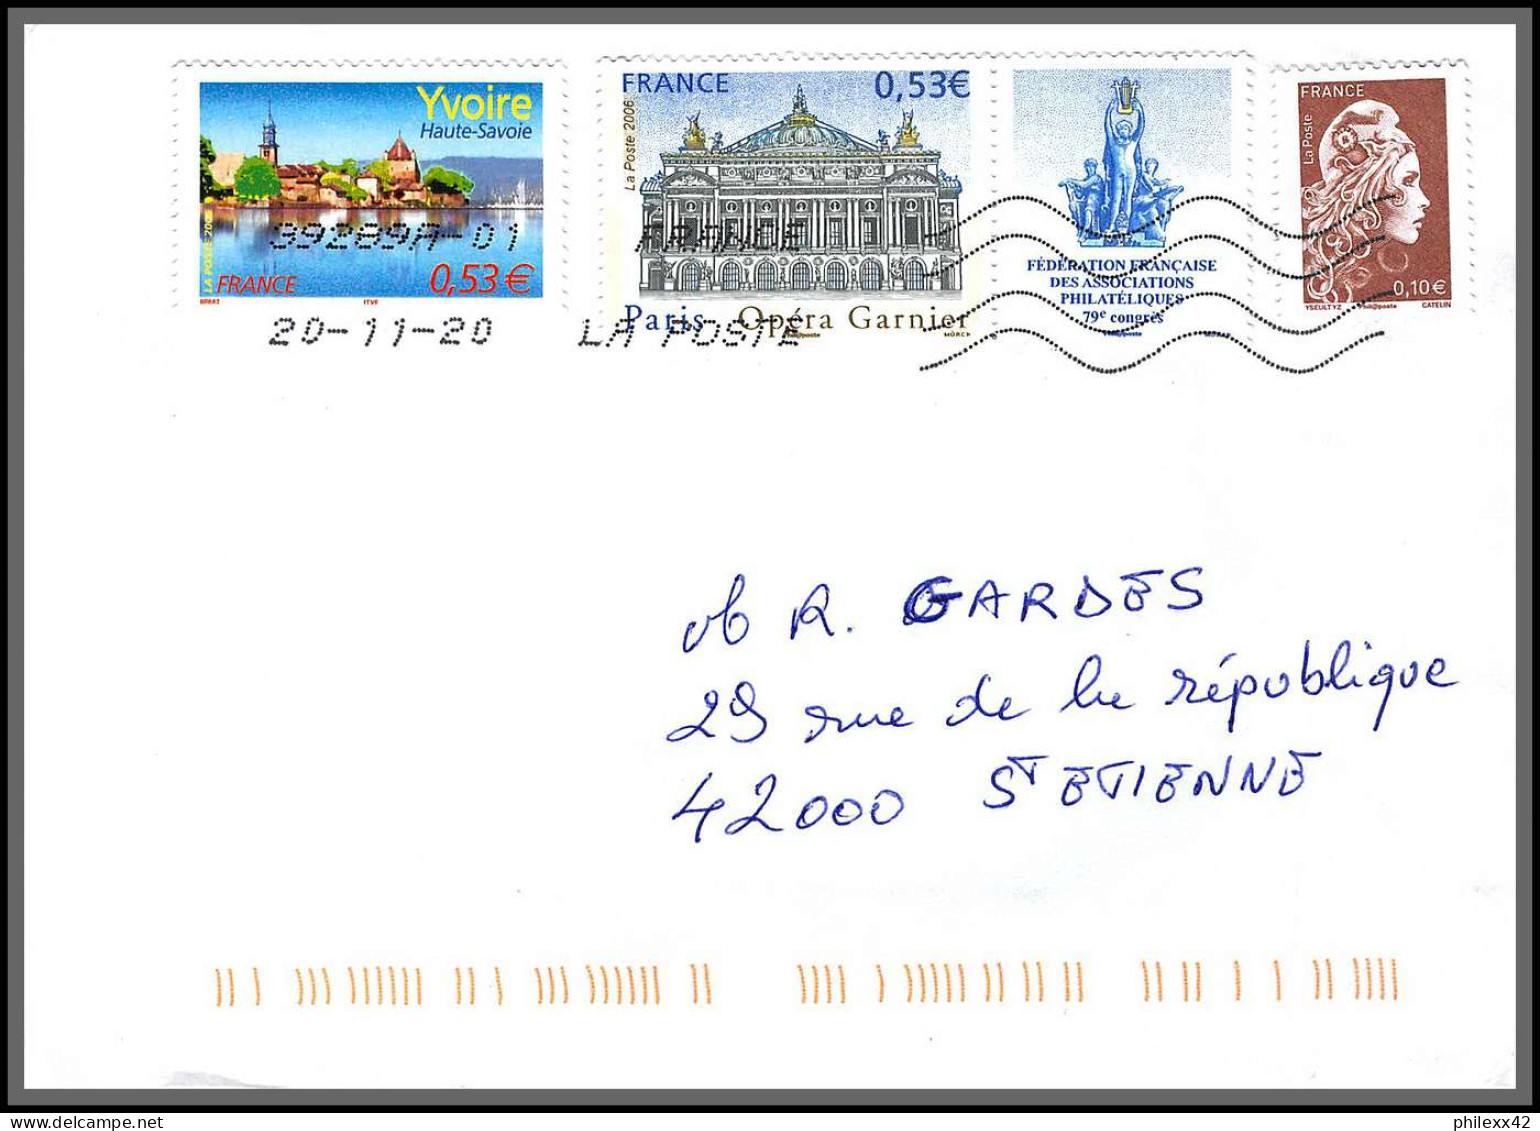 95840 Lys Lez Lannoy Pour St Etienne Loire 20/11/2020  Lettre Cover Période Du Second Confinement COVID  - Lettres & Documents